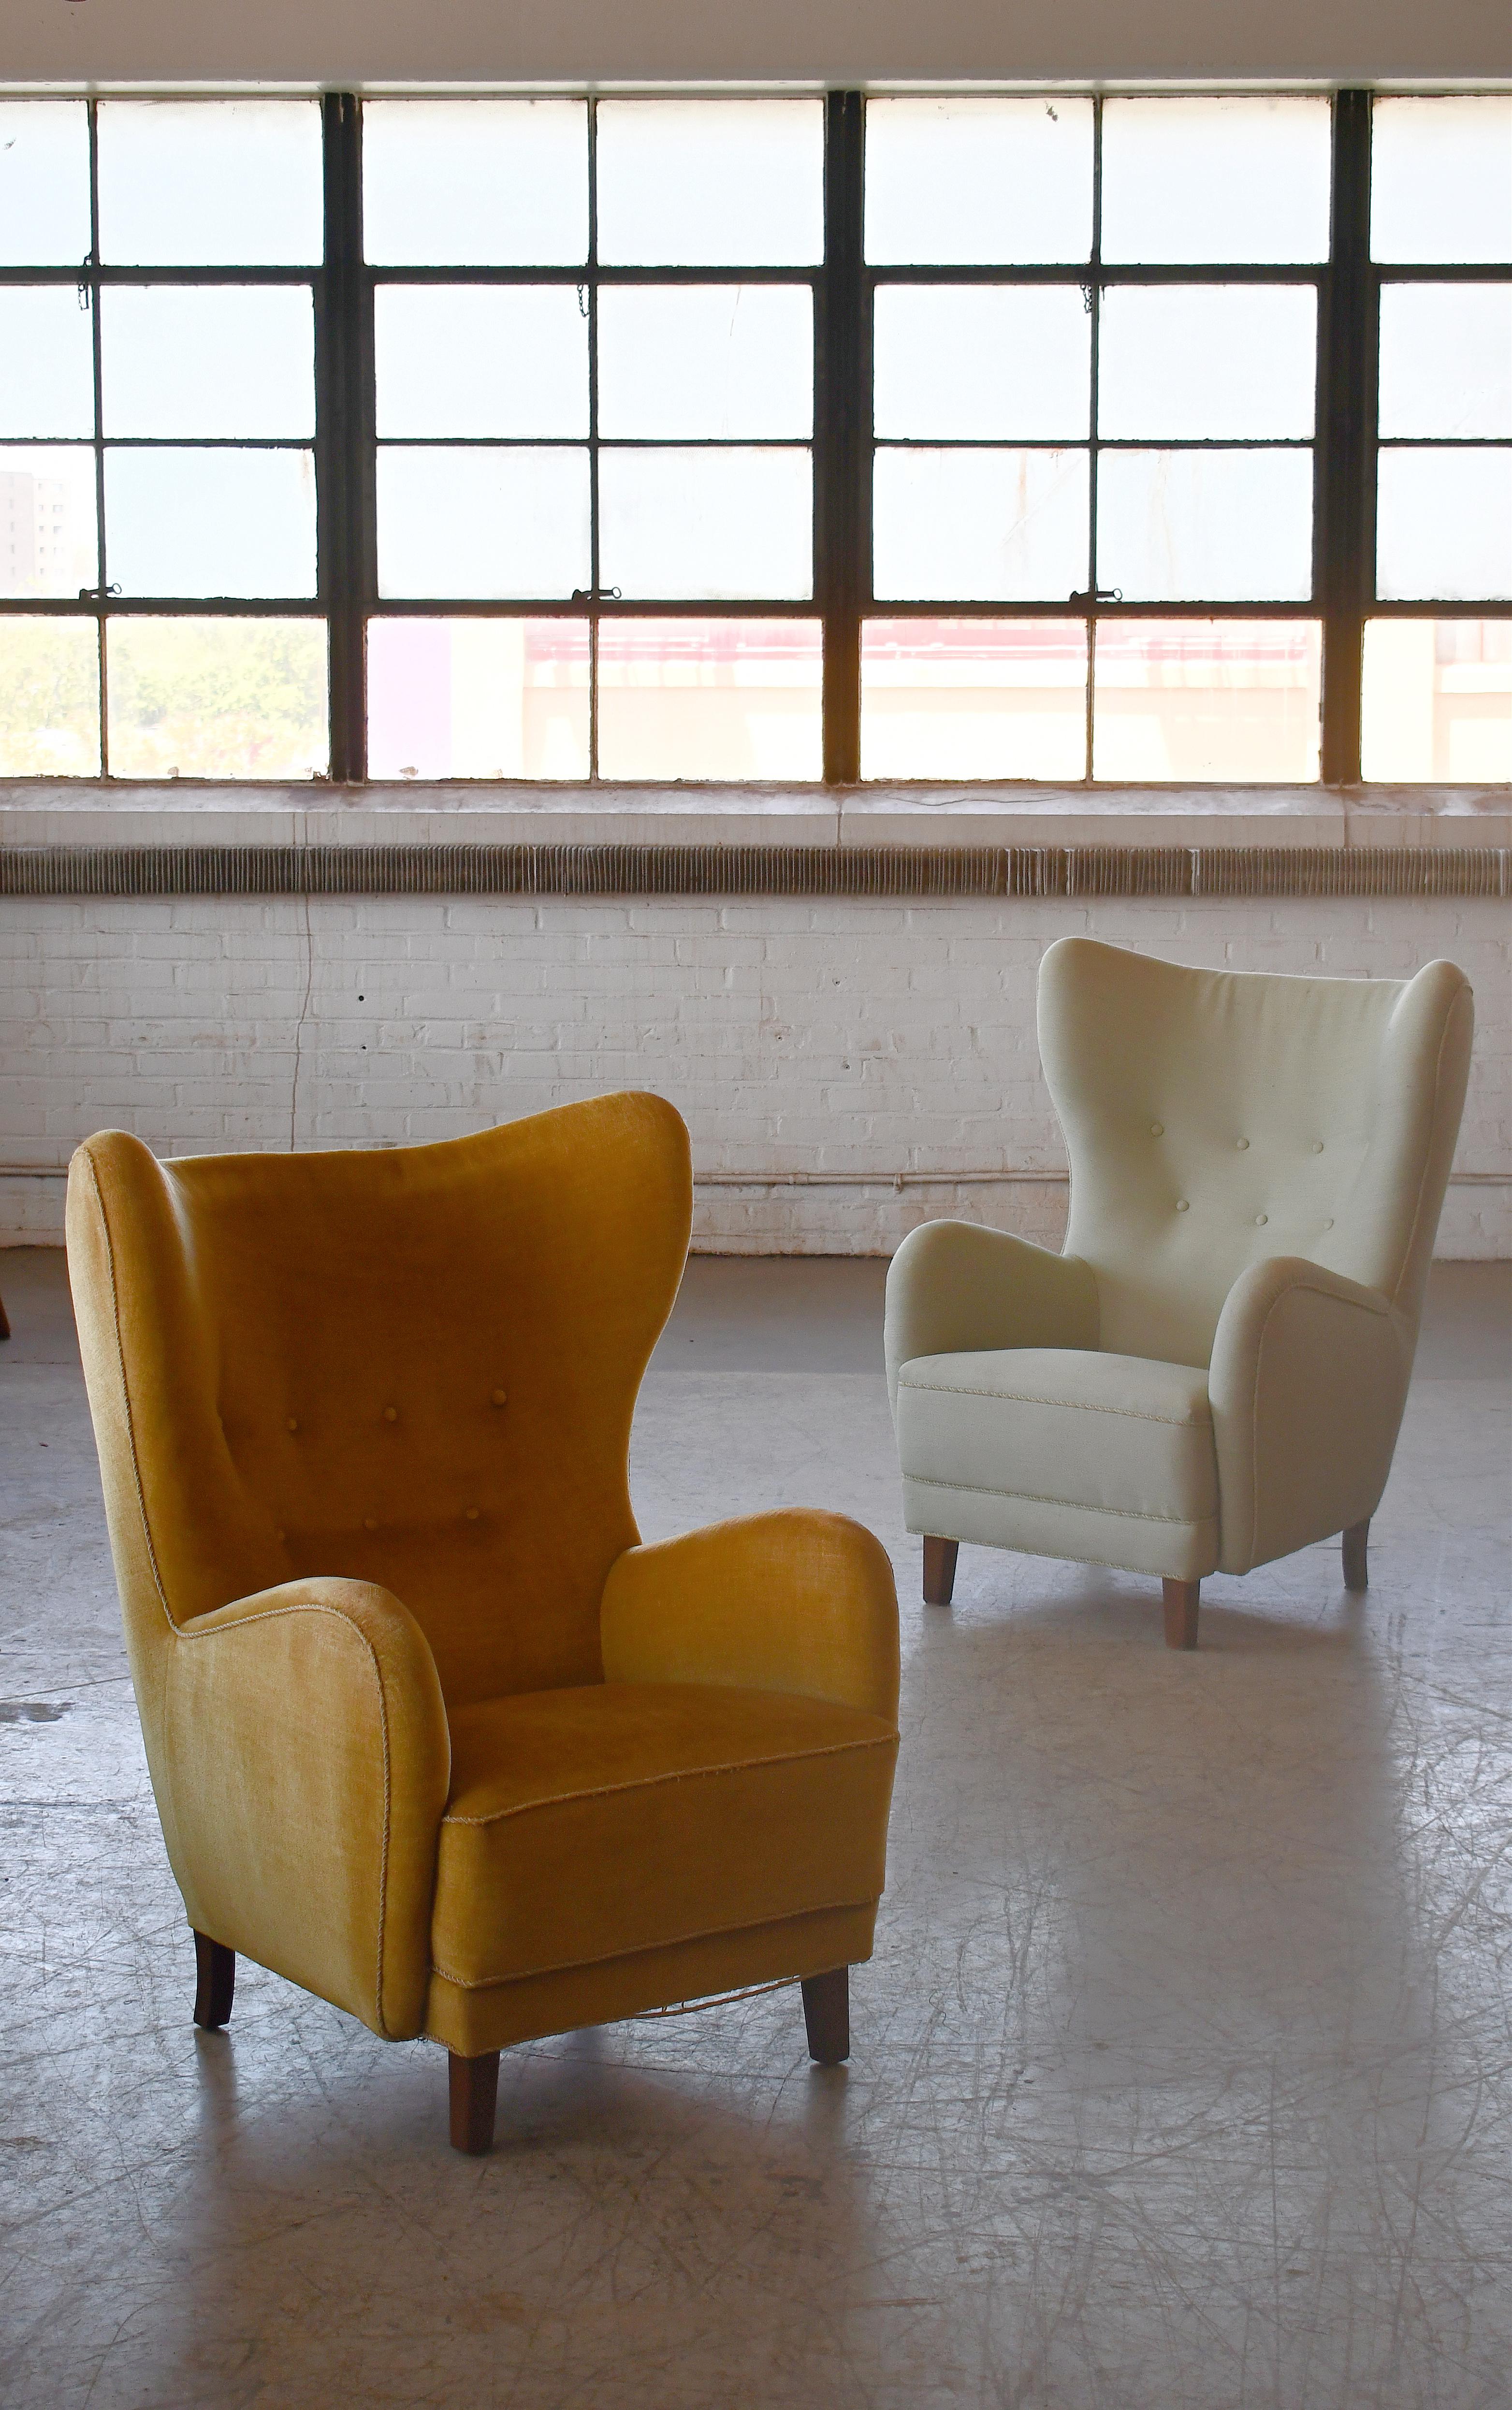 Paar schöne Flemming Lassen zugeschrieben hohe Rückenlehne Lounge-Stühle gemacht, ca. 1940. Diese kultigen Loungesessel gehören wahrscheinlich zu den perfektesten Hochlehnern, die je entworfen wurden. Mit seiner ultra-eleganten, sinnlichen Form und